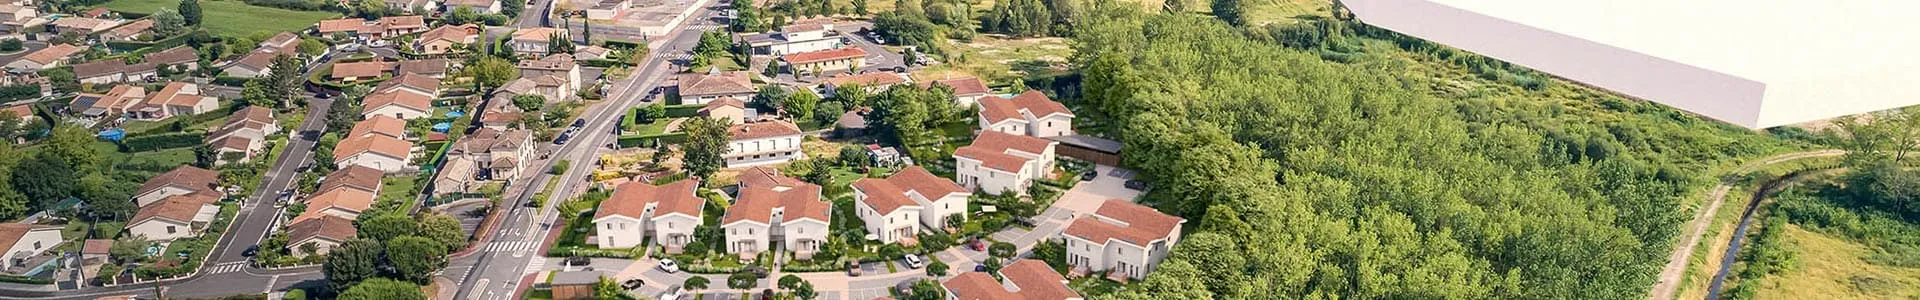 Vue aérienne du quartier autour de la résidence Villas des Parfums